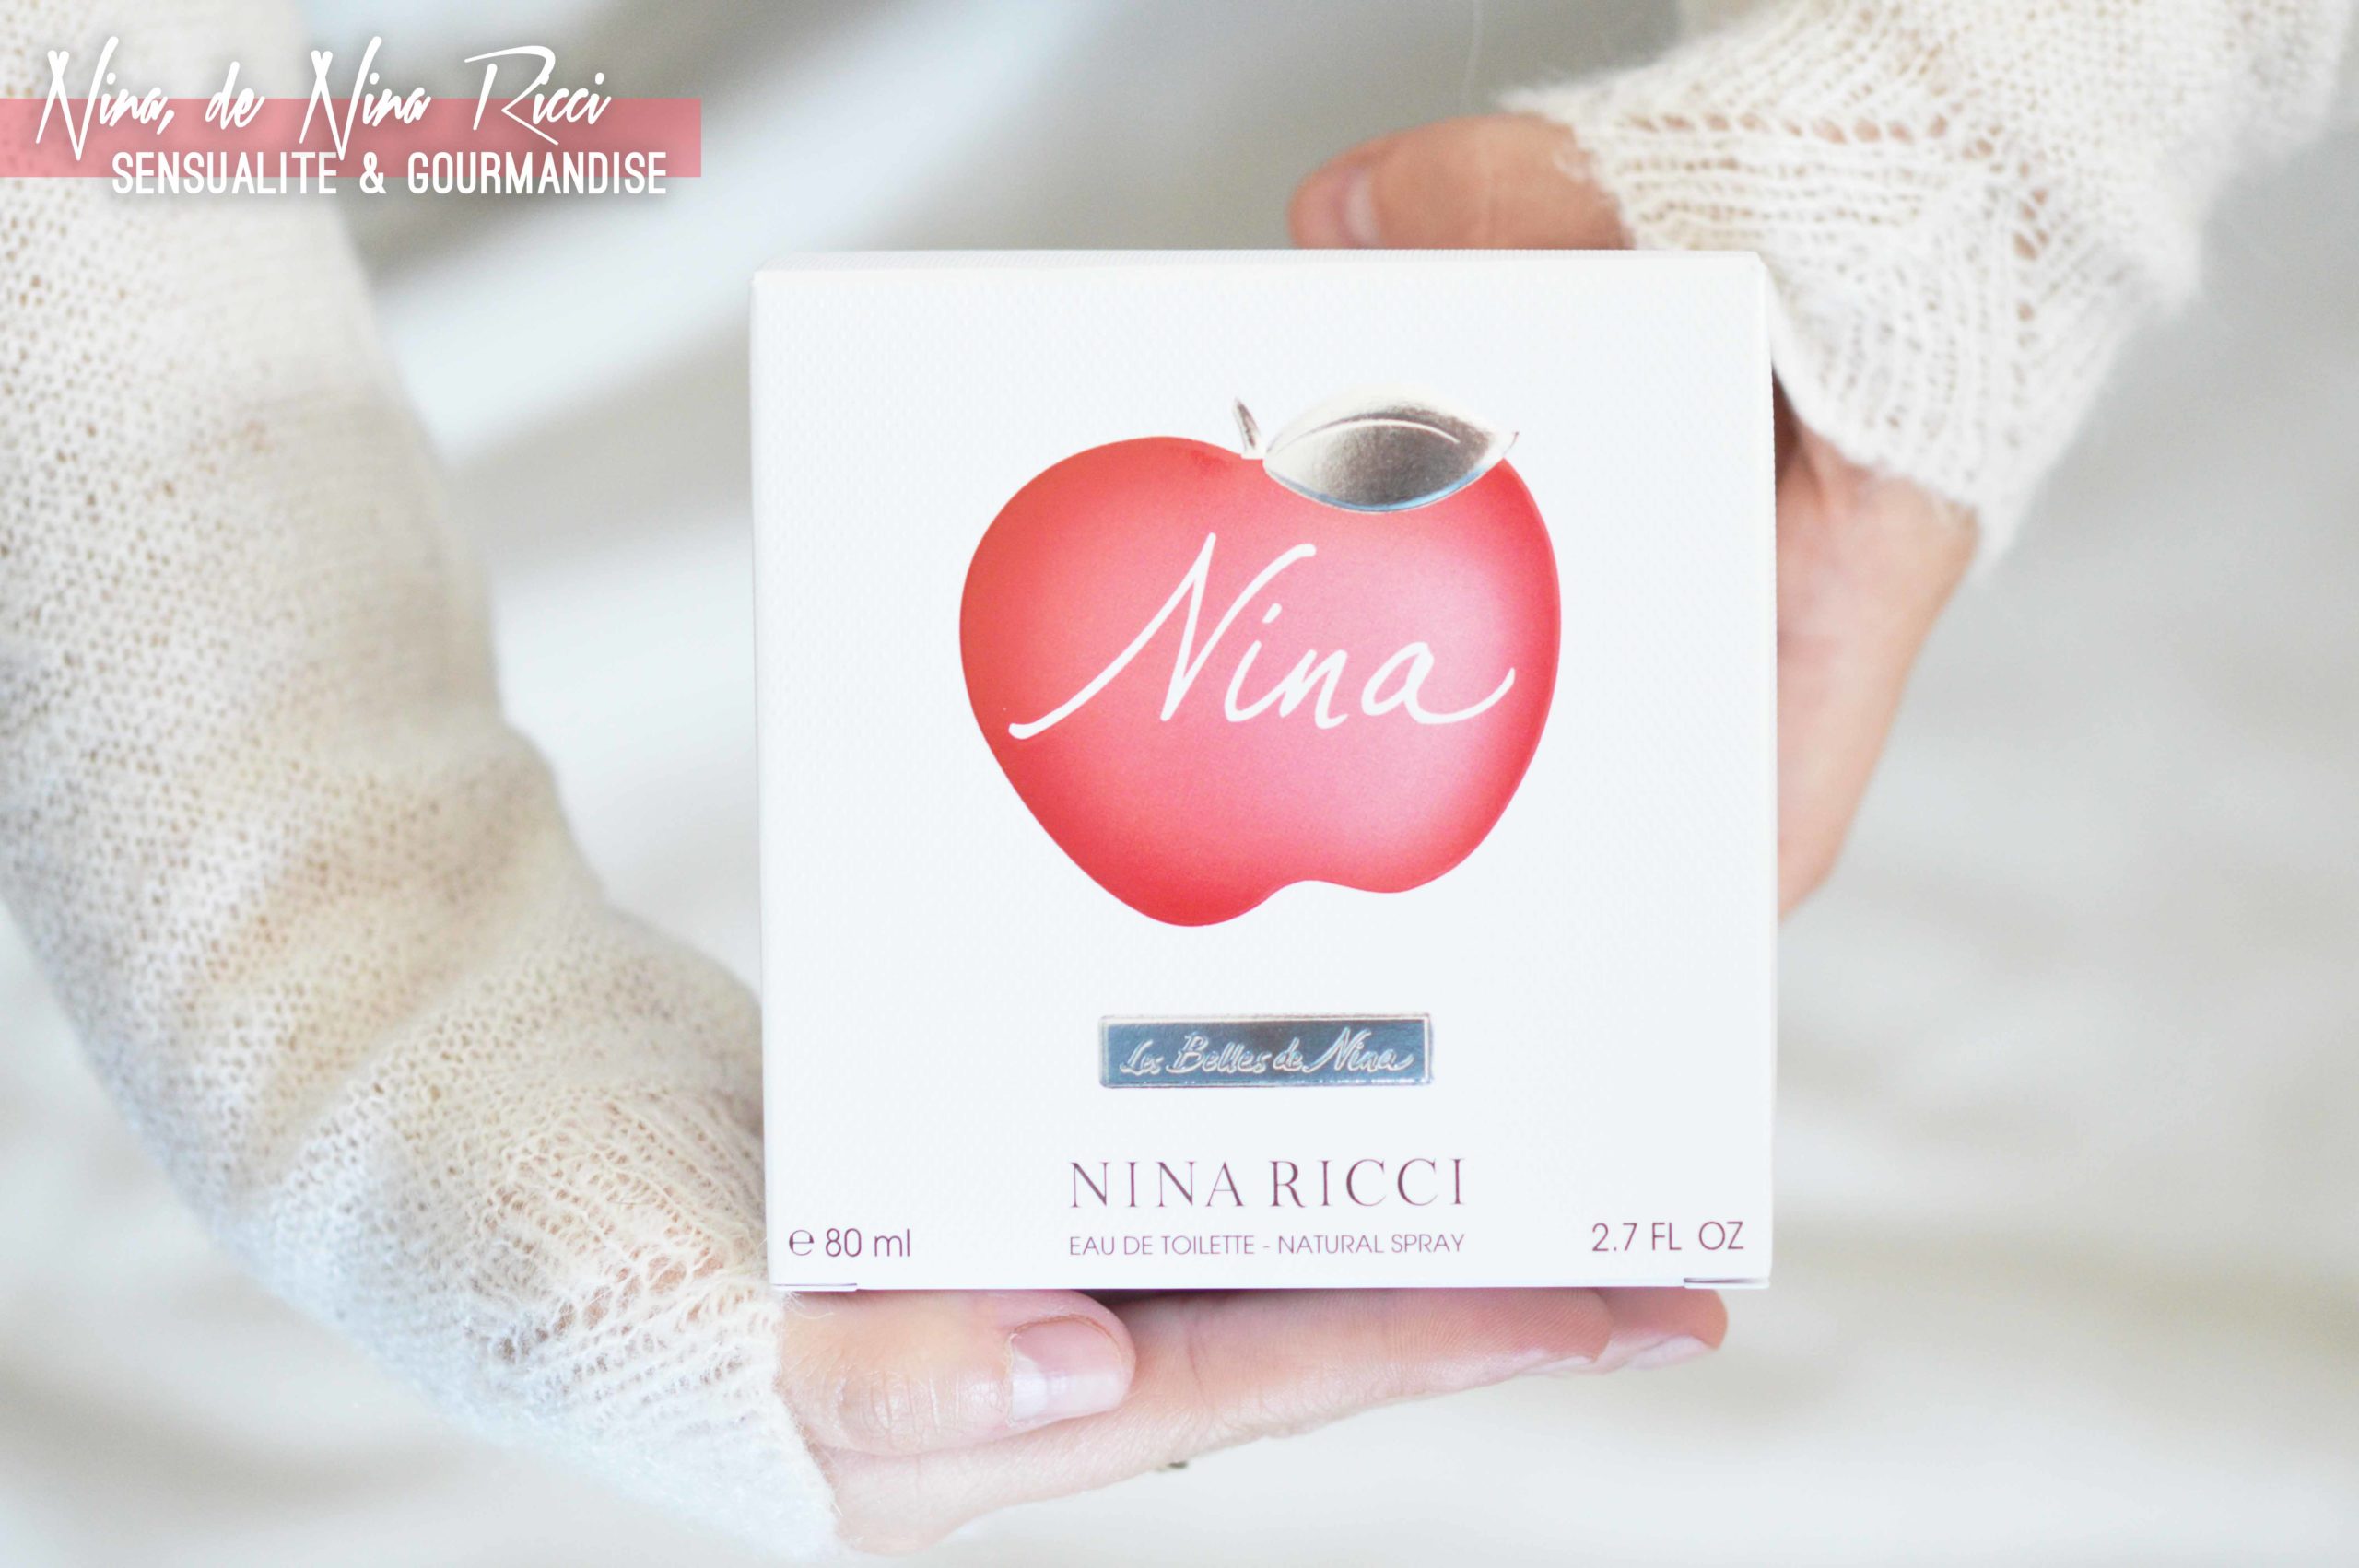 Nina de Nina RIcci le parfum gourmand et sensuel à retrouver chez Notino